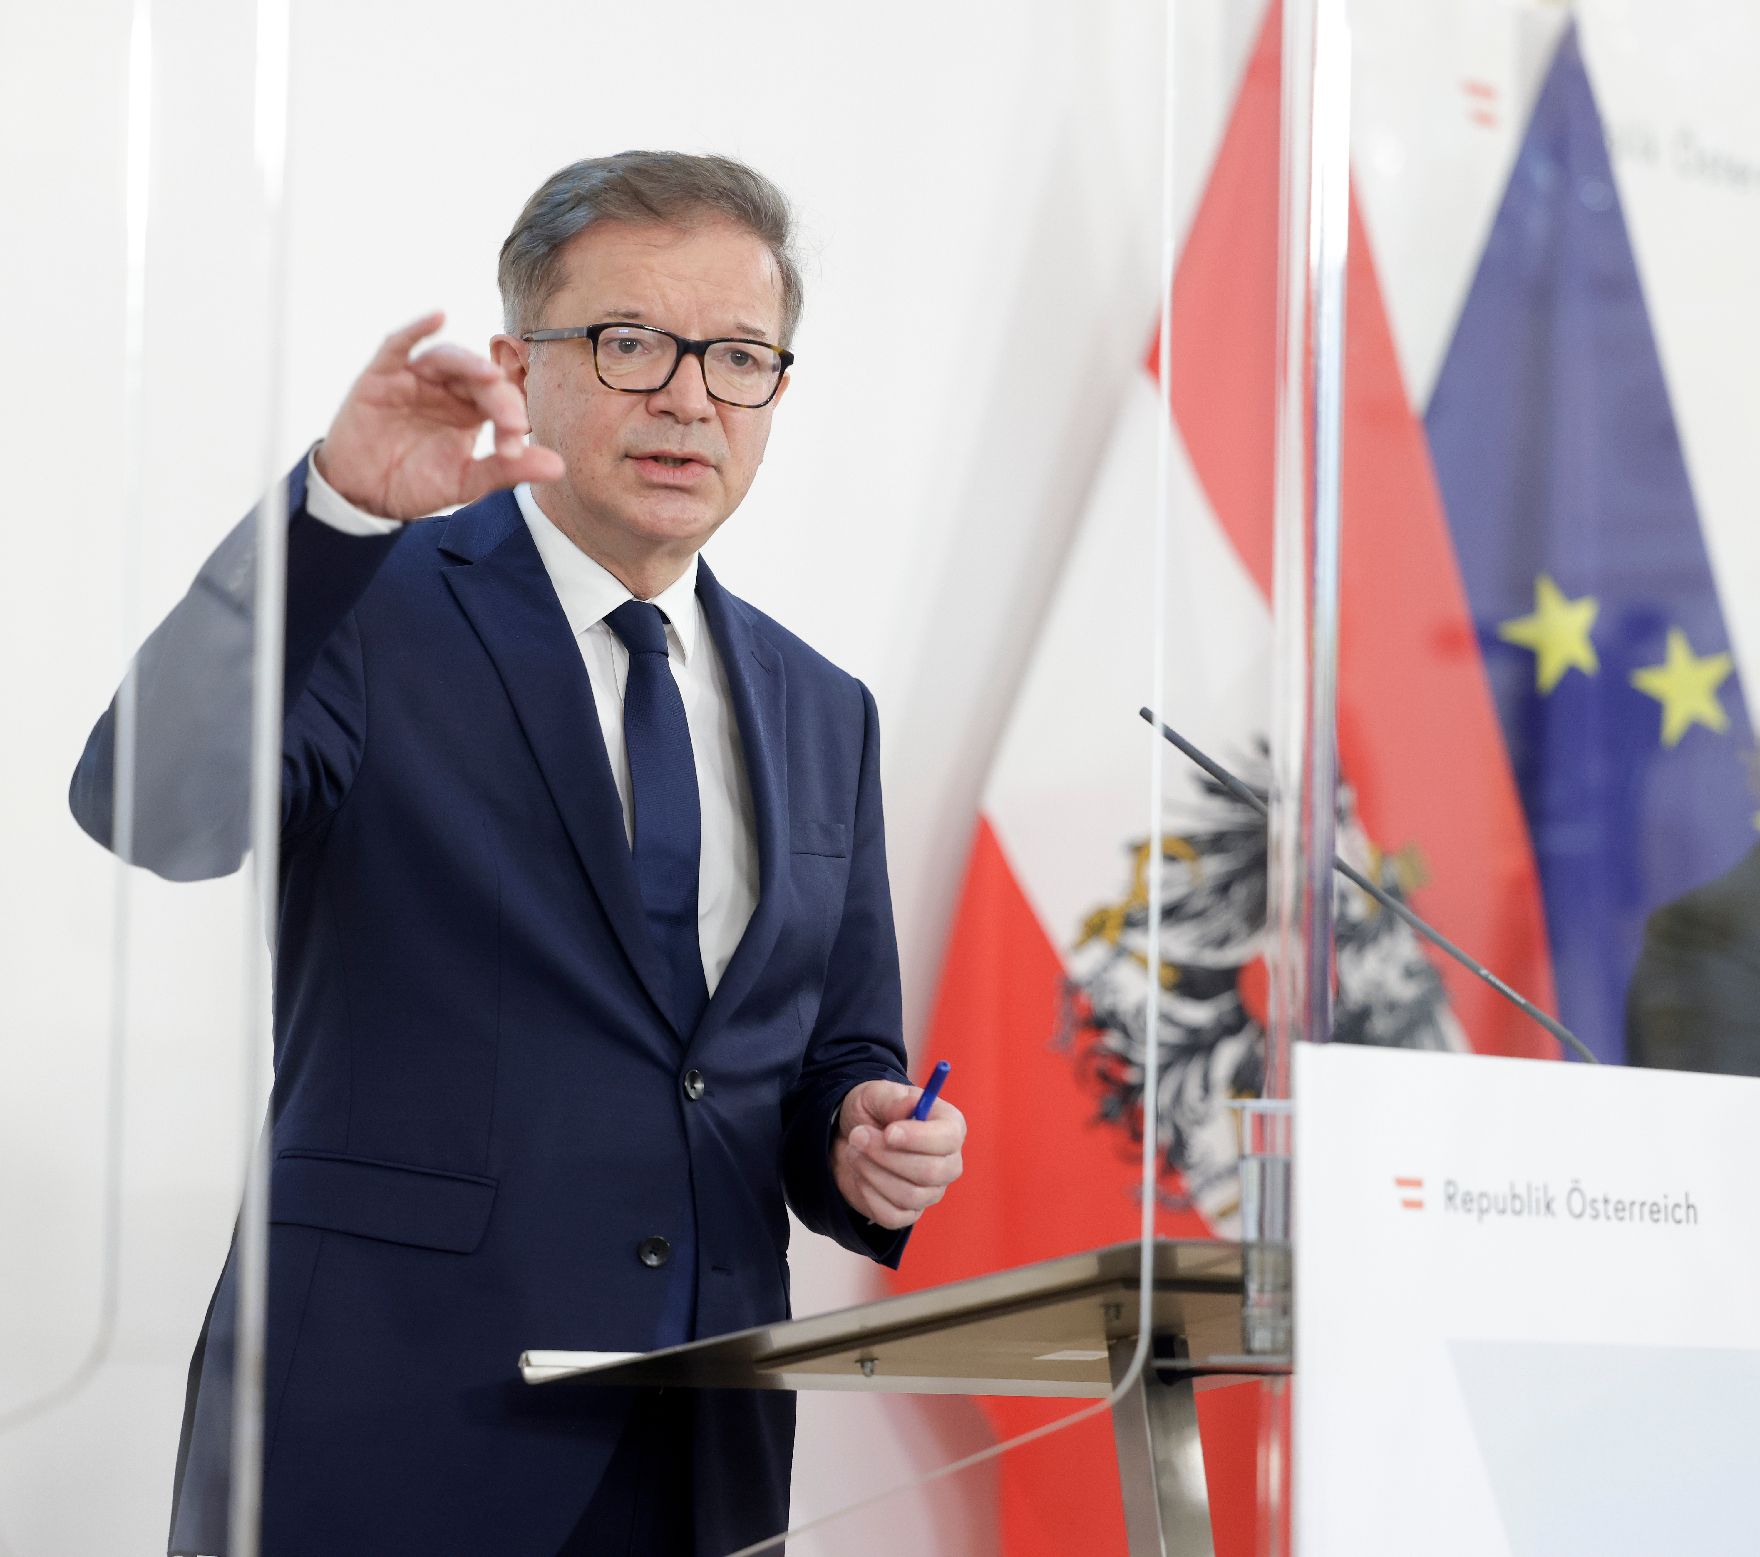 Am 26. Februar 2021 fand ein Pressestatement zu den Maßnahmen gegen die Krise im Bundeskanzleramt statt. Im Bild Gesundheitsminister Rudolf Anschober.